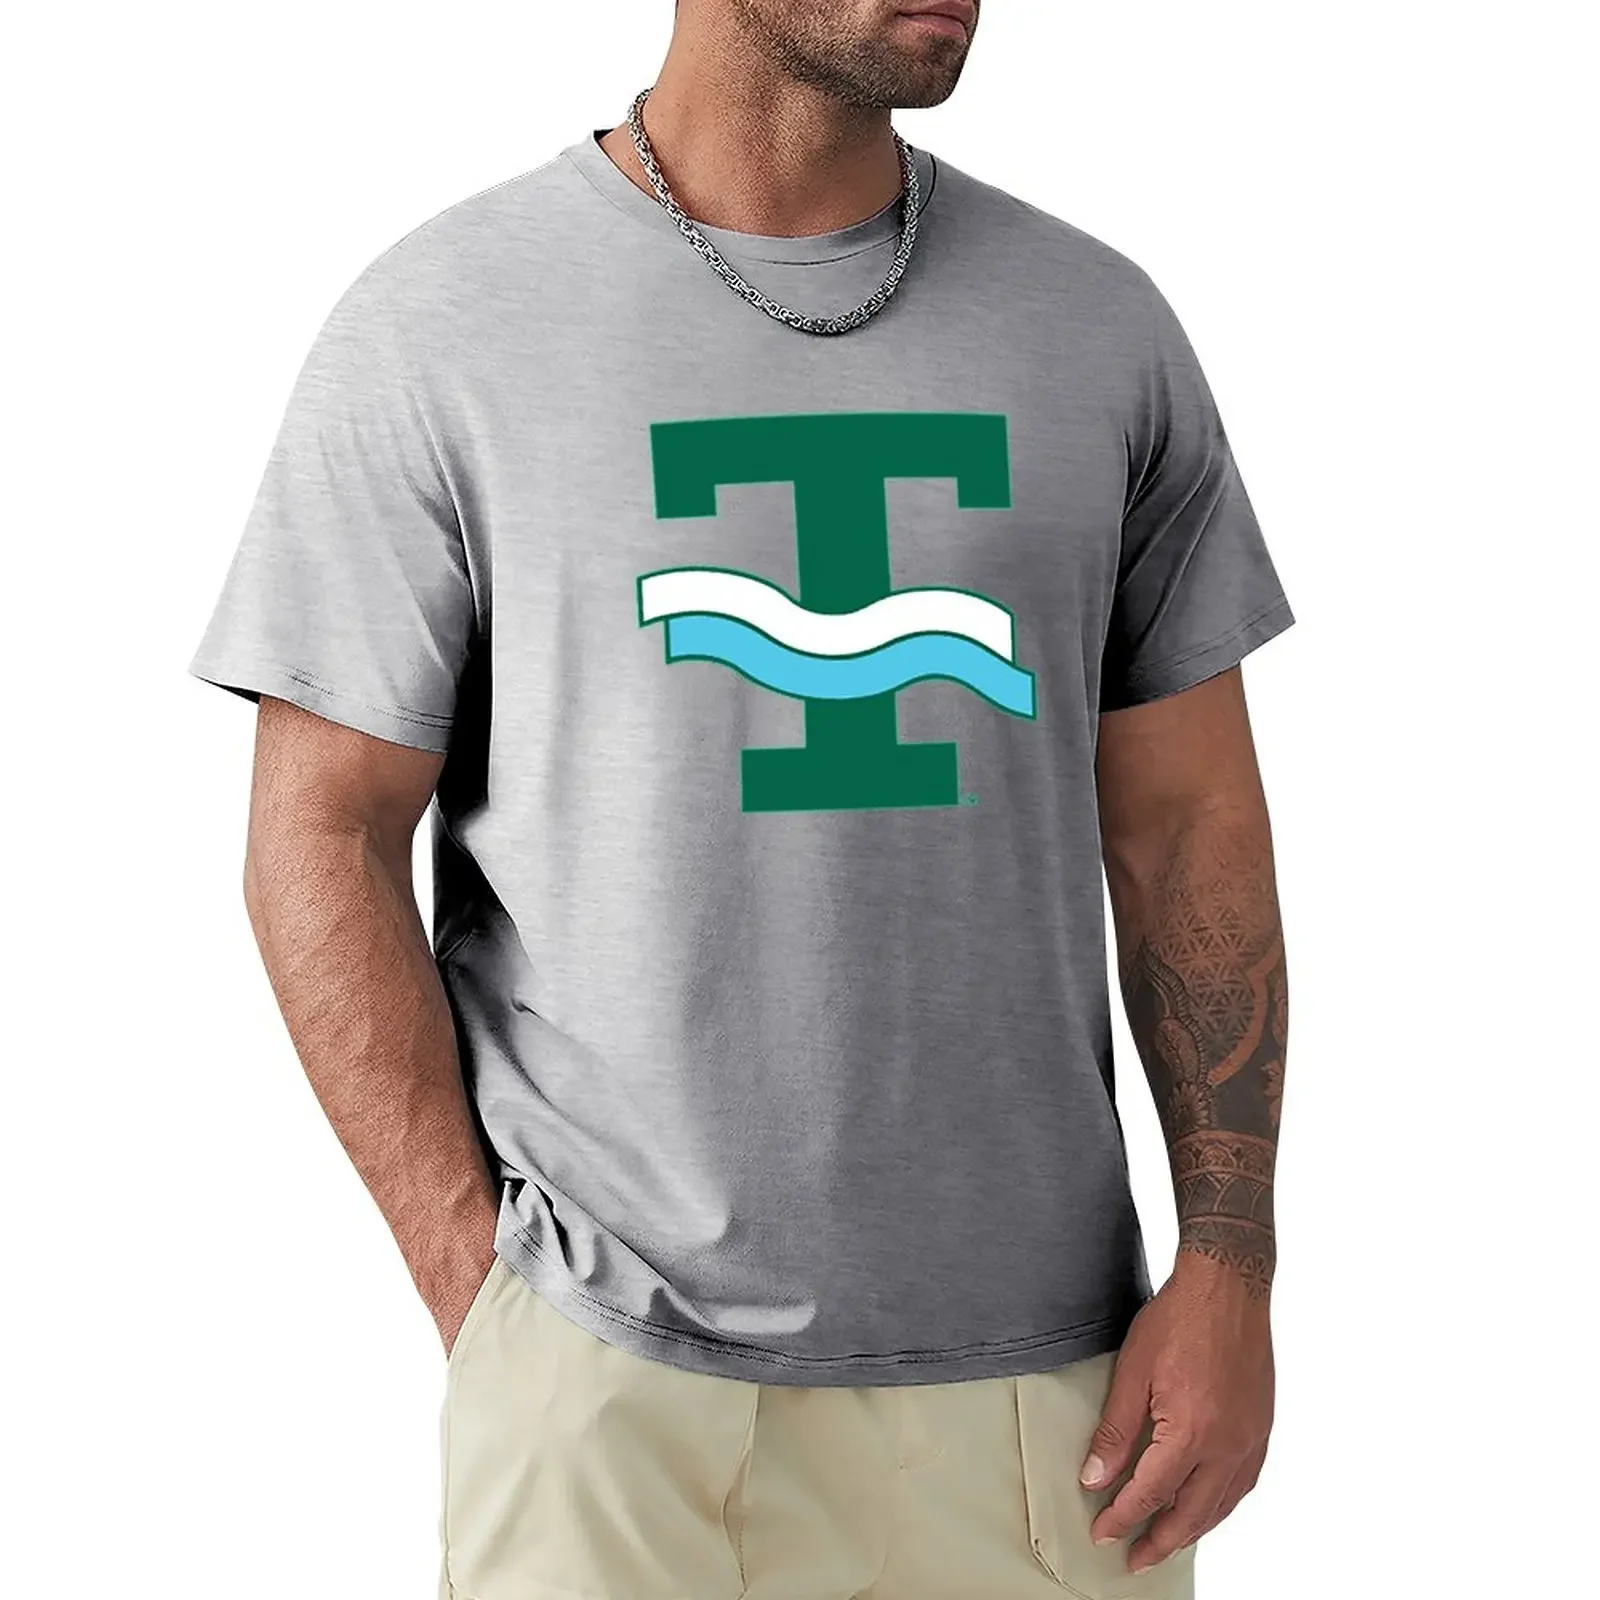 

Tulane University Green Wave Vintage Logo T-Shirt cute clothes hippie clothes plus sizes summer top plain white t shirts men